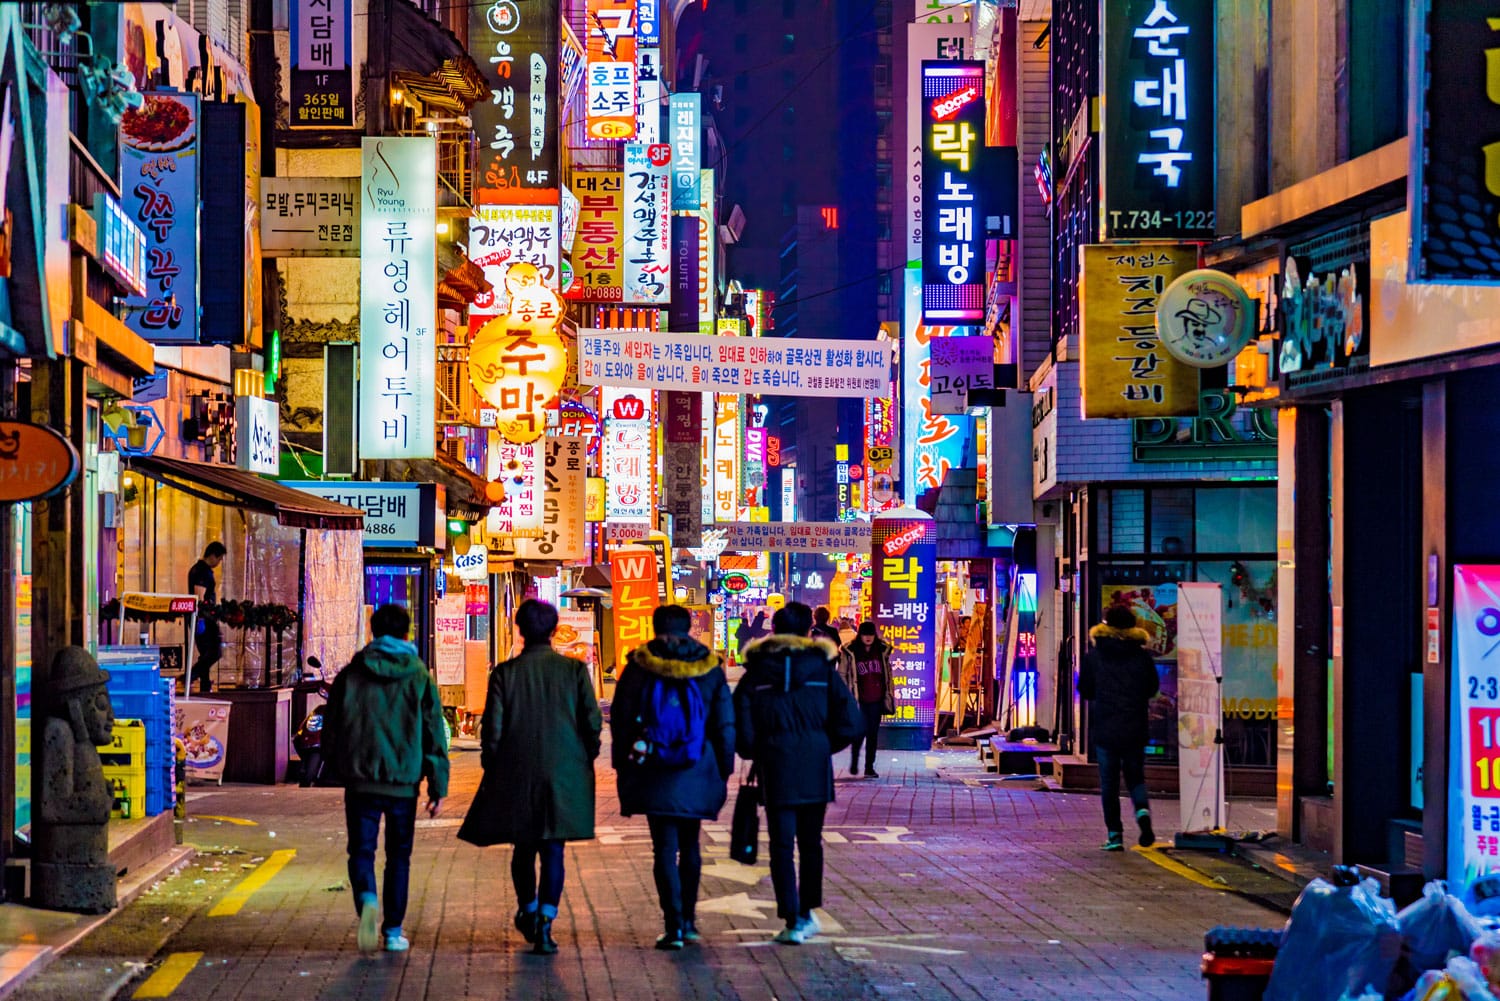 πολύχρωμες πινακίδες στο δρόμο της Σεούλ, Νότια Κορέα τη νύχτα